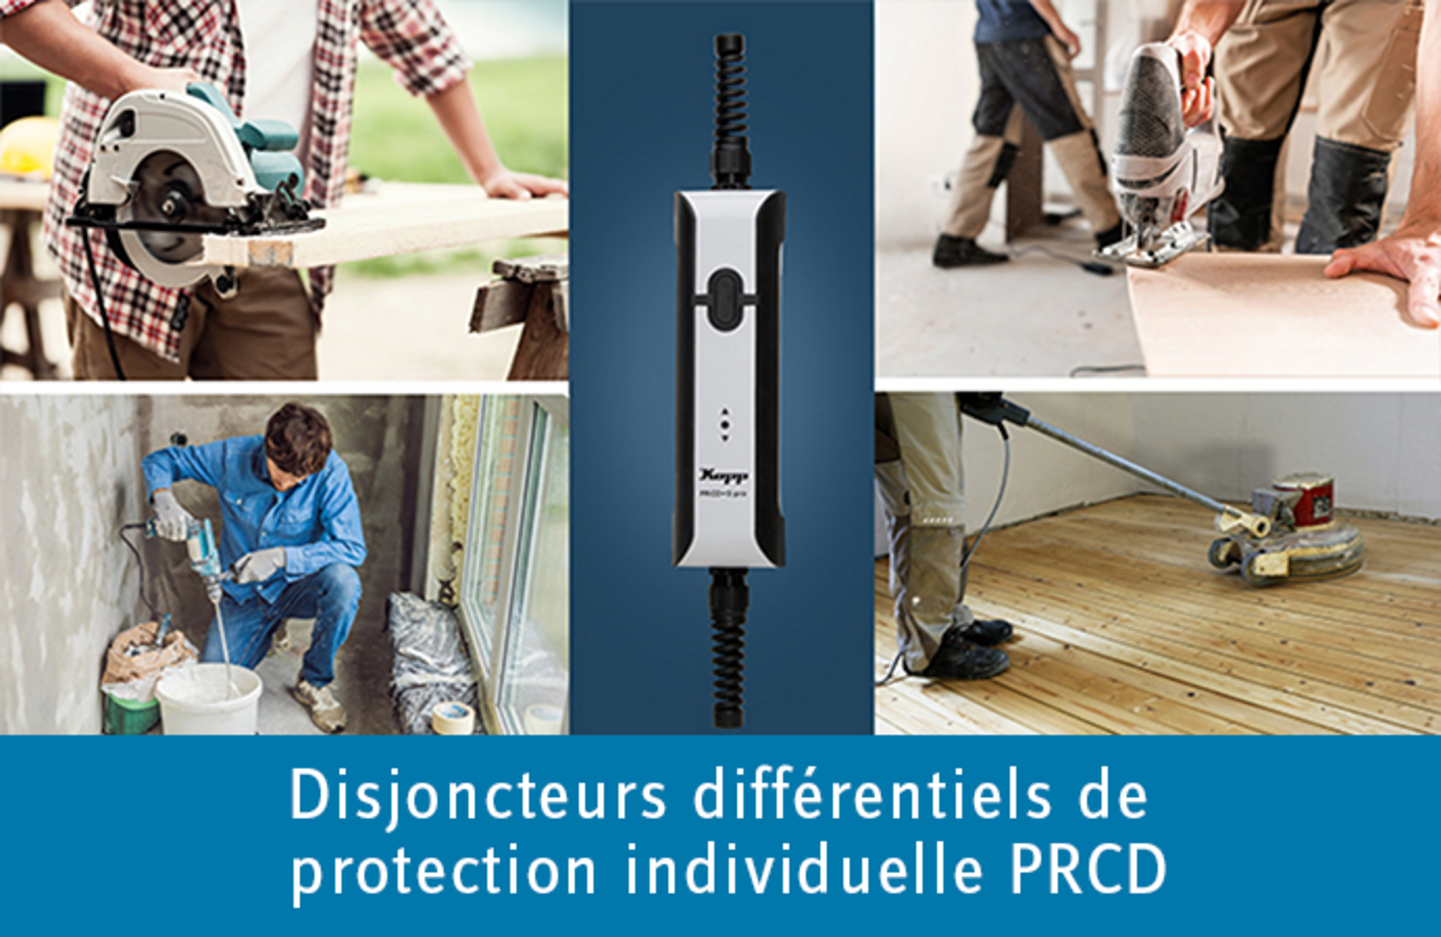 Disjoncteurs différentiels de protection individuelle PRCD